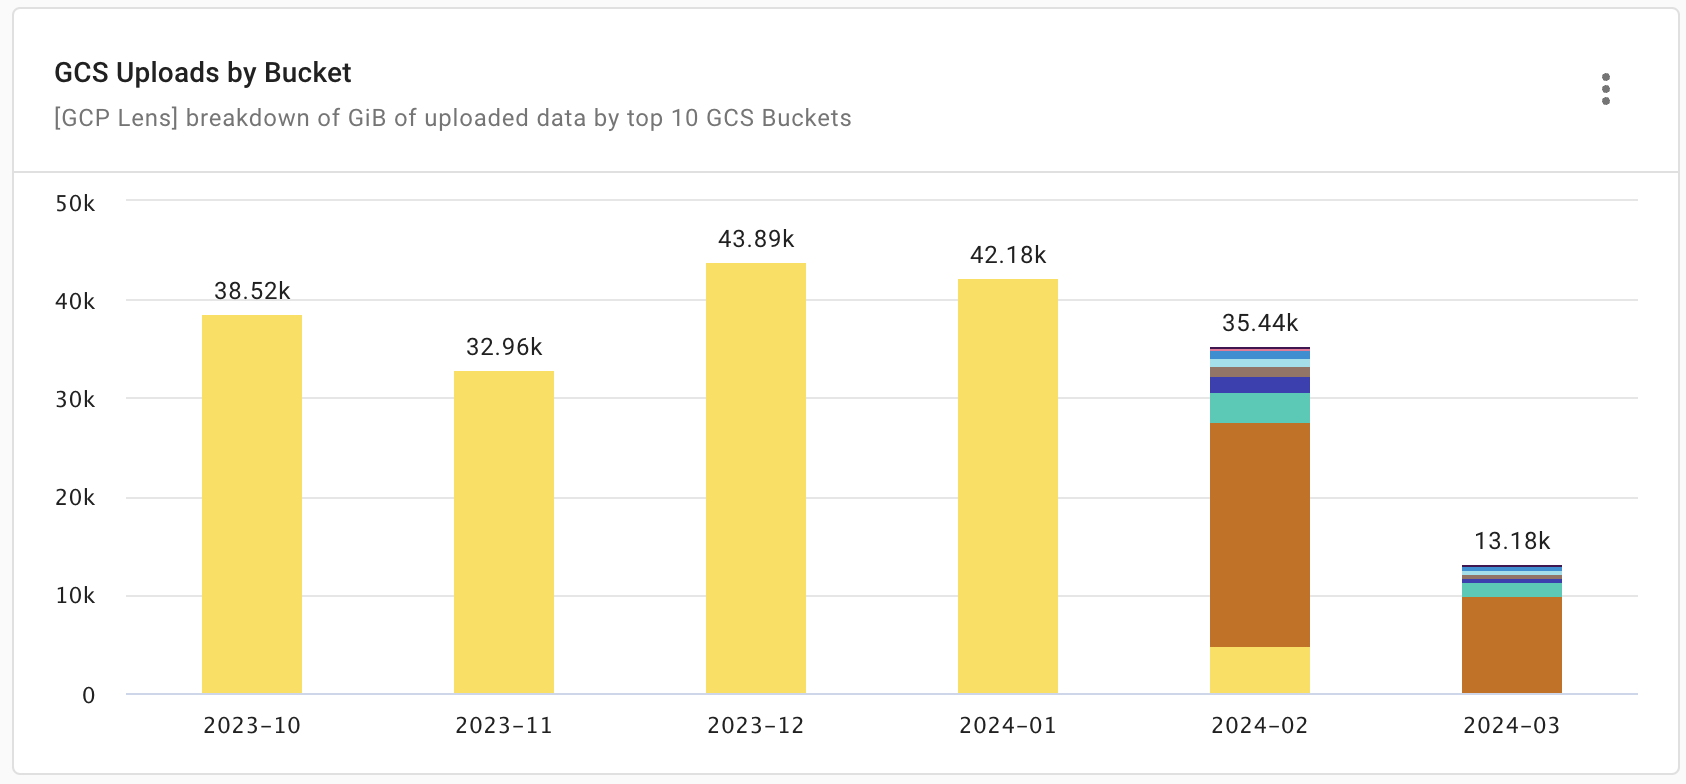 GCS uploads by bucket